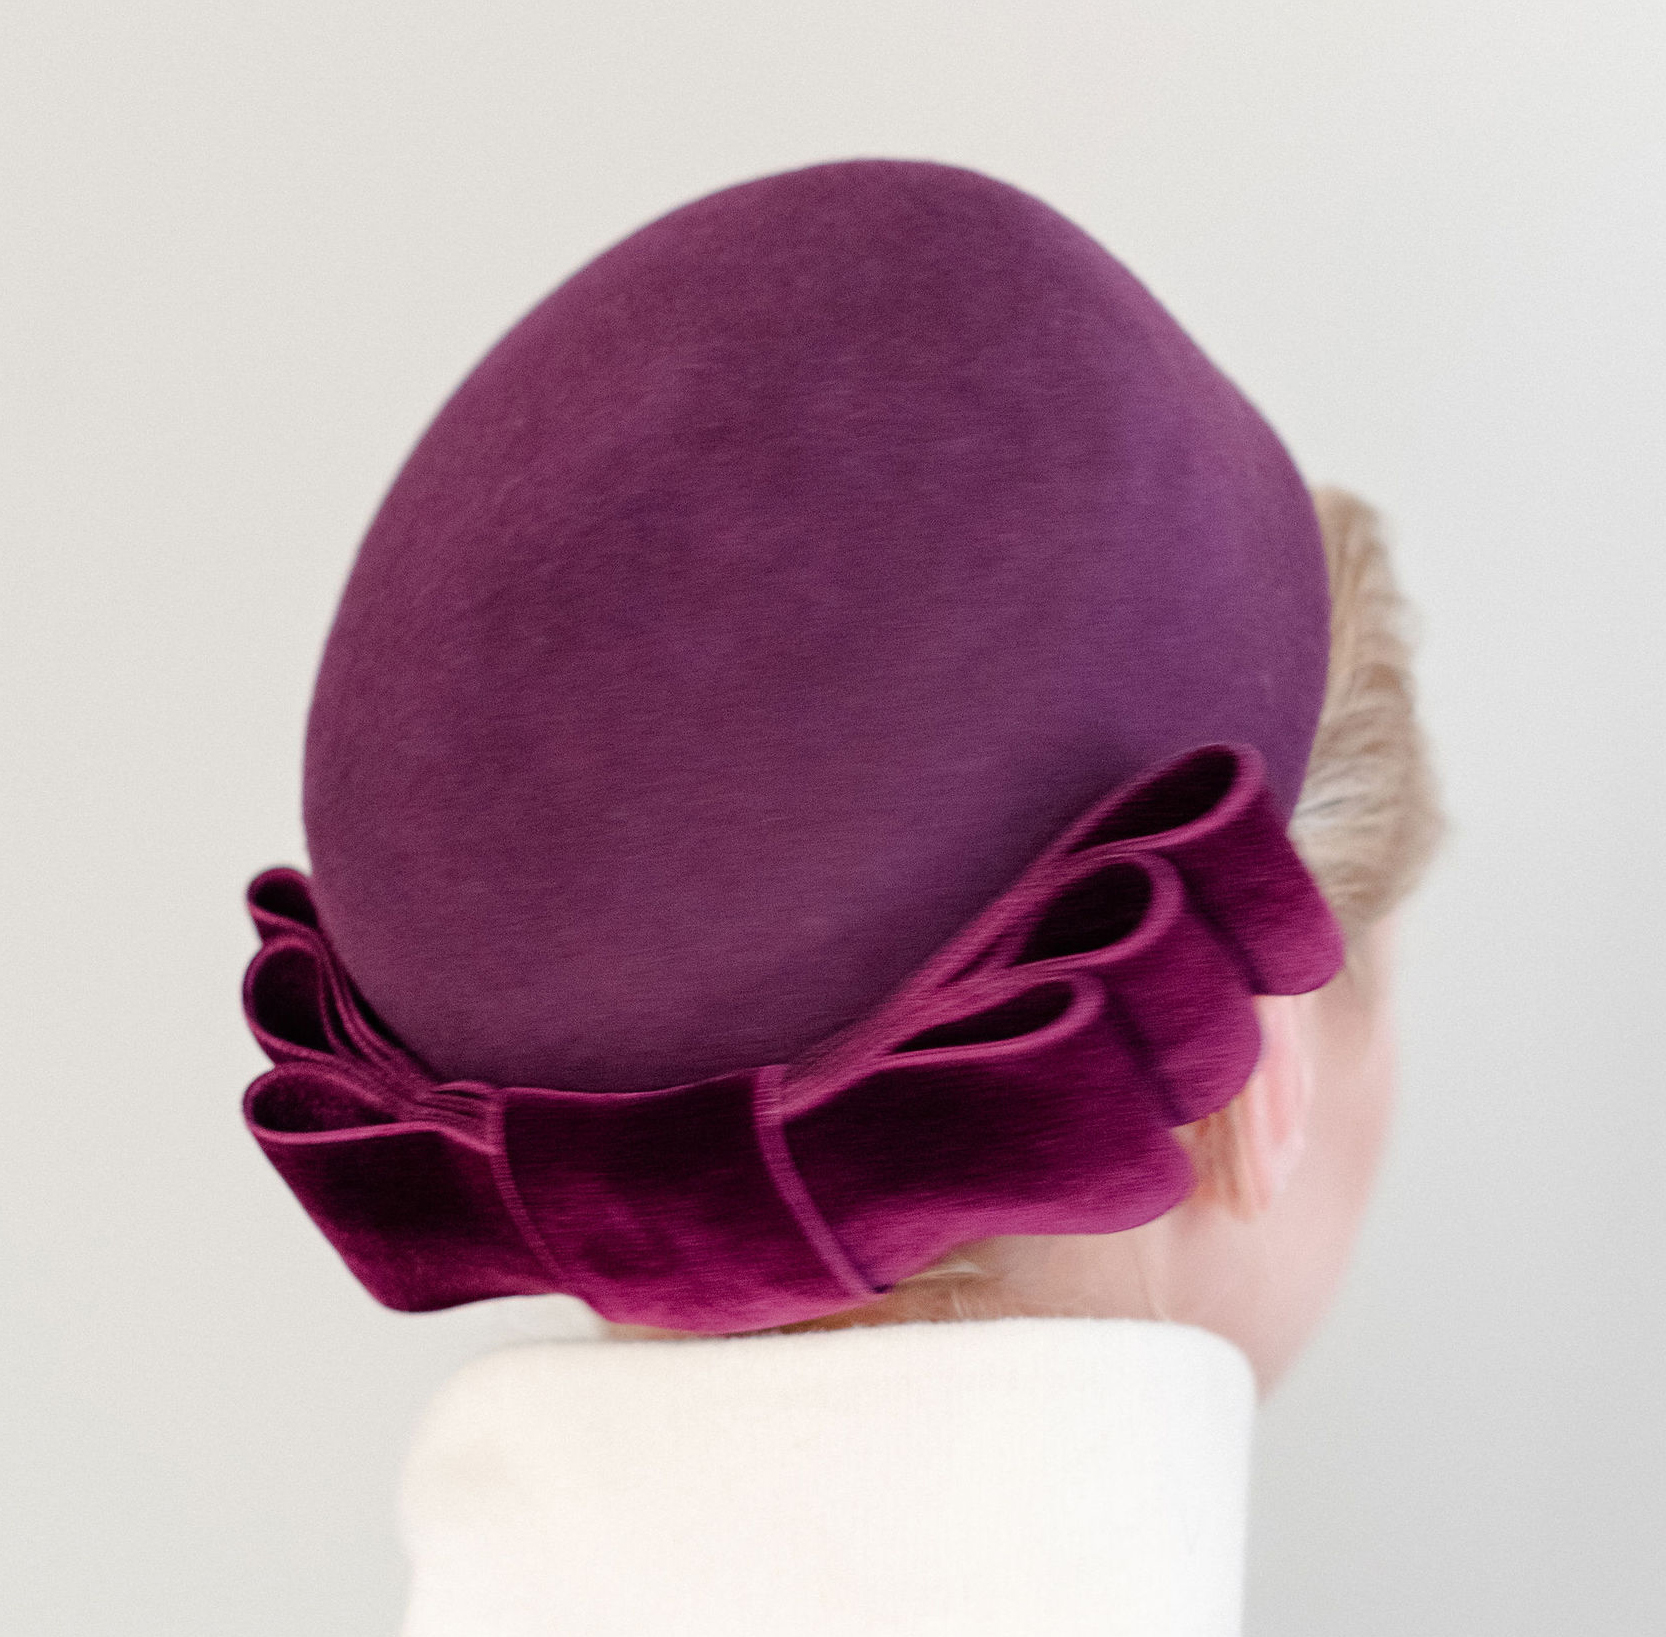 V V Rouleaux Burgundy Winter Wedding Hat